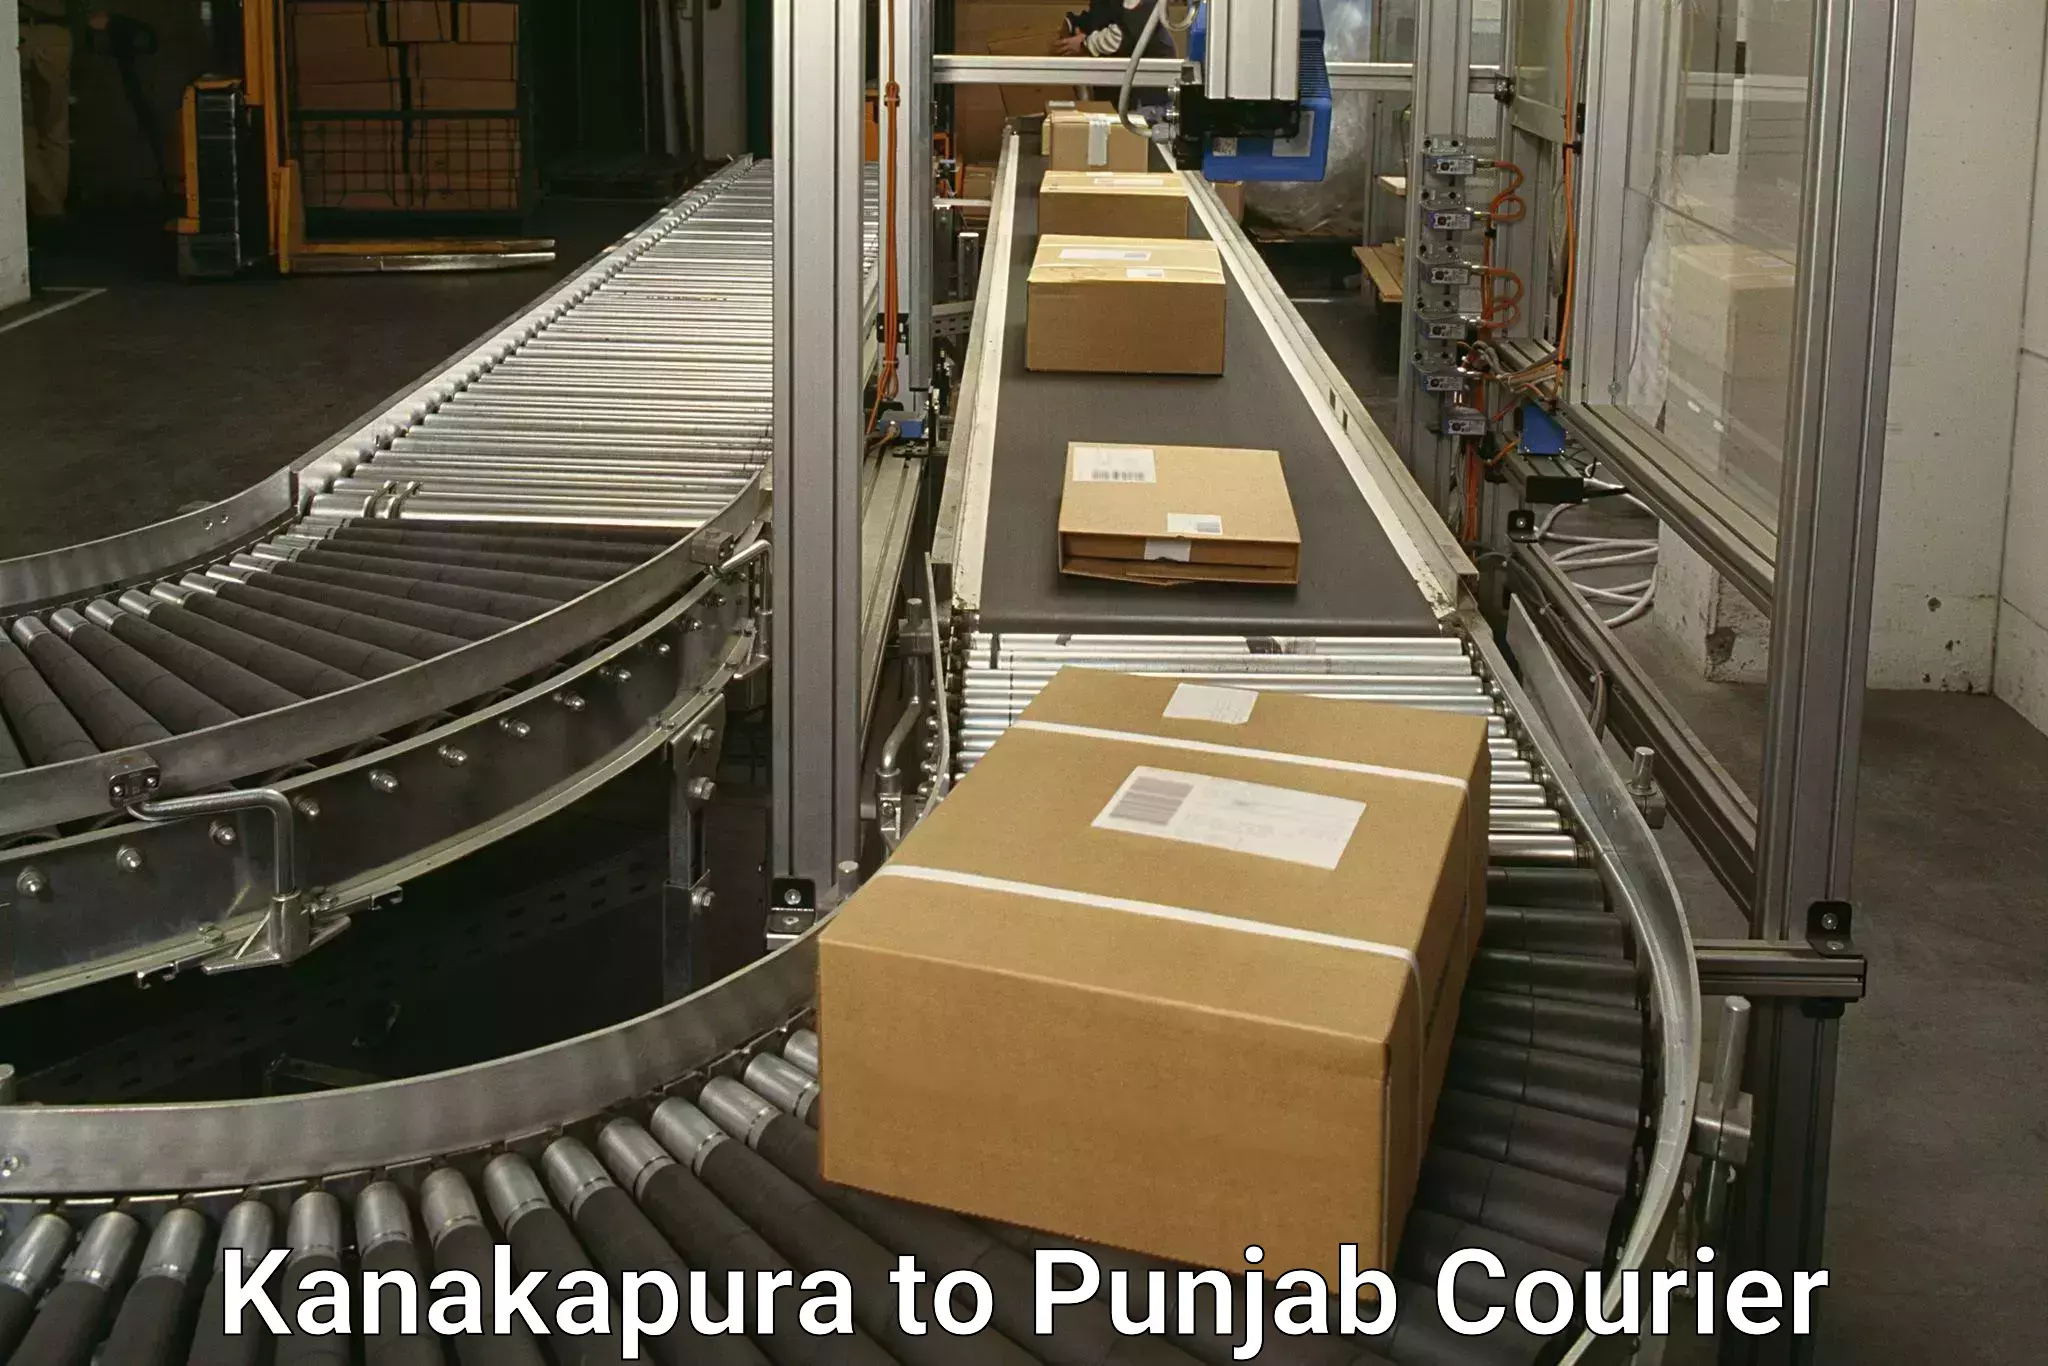 Seamless shipping experience Kanakapura to Amritsar